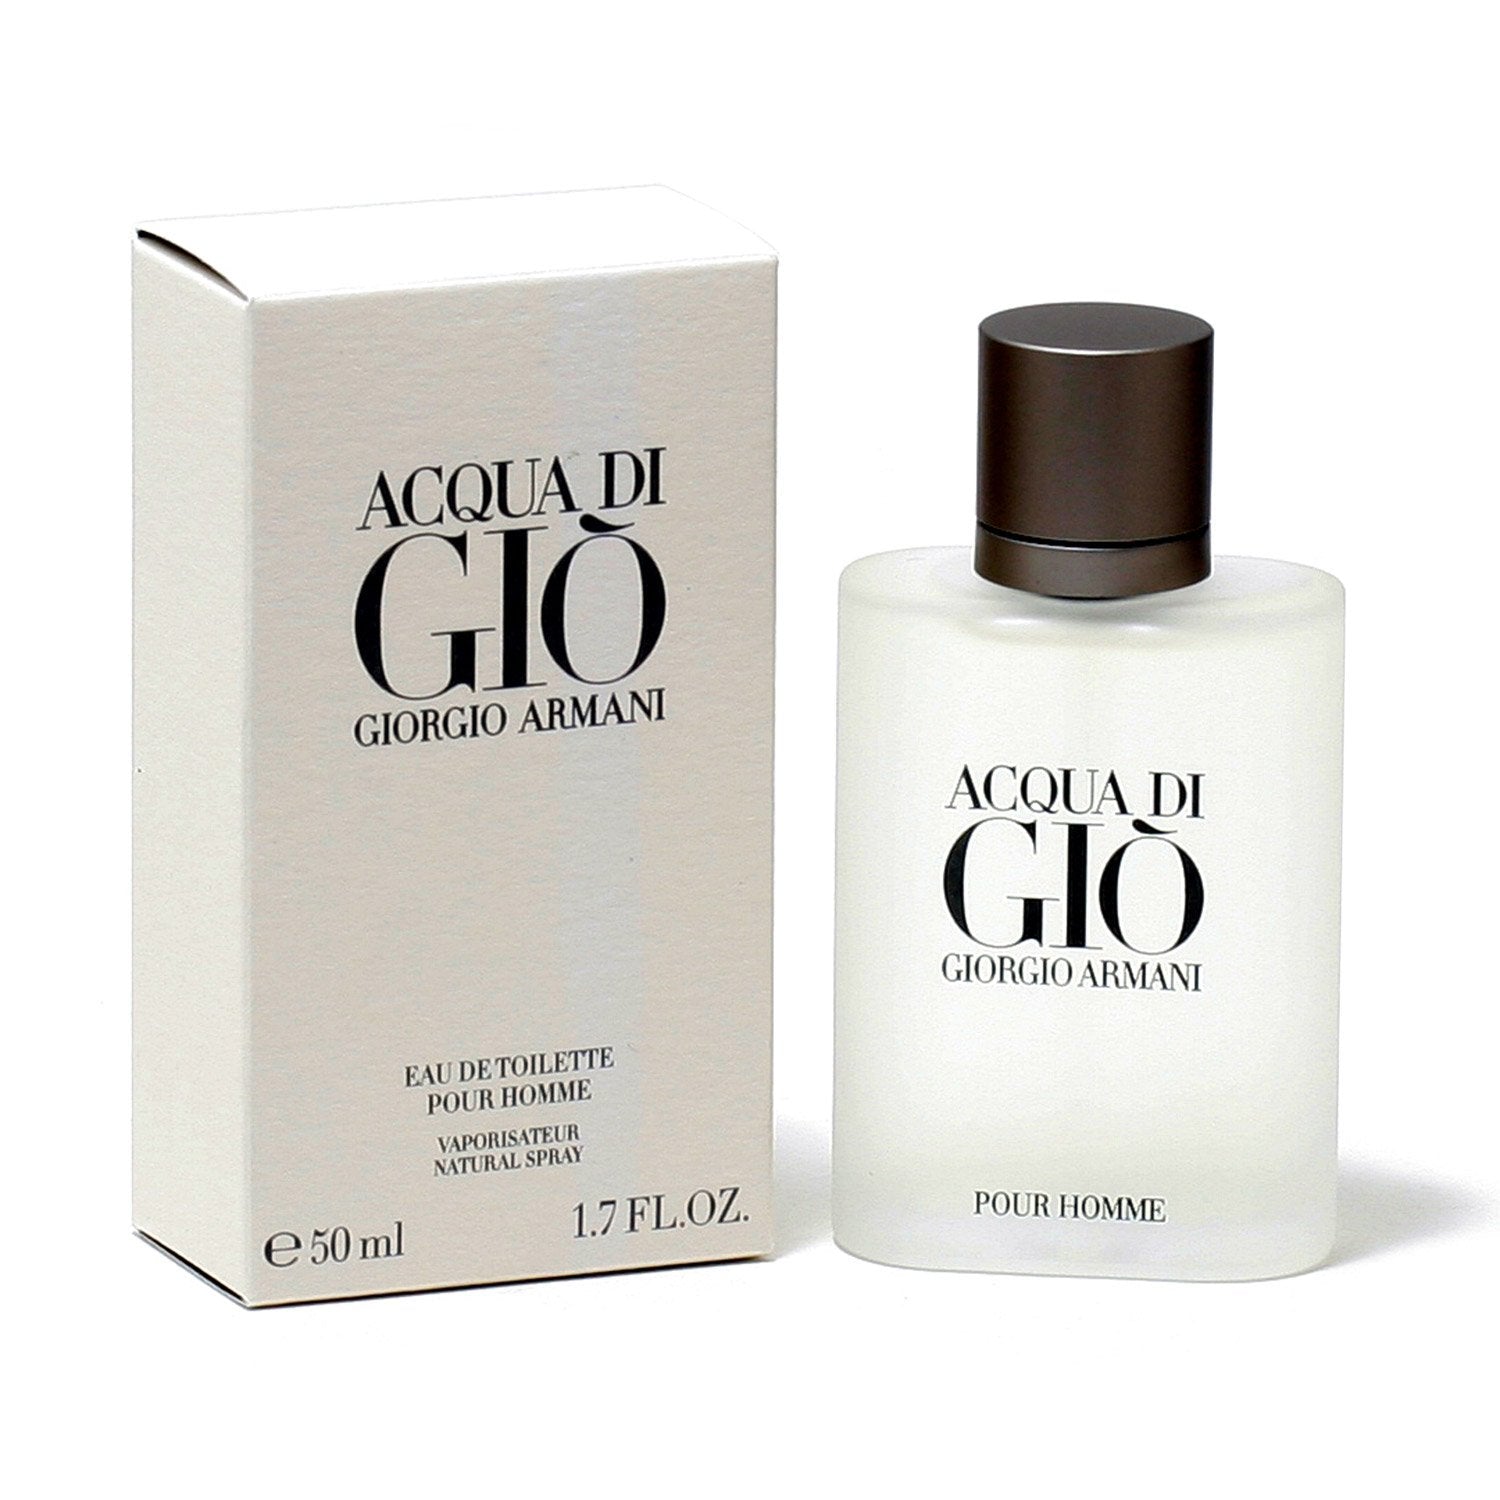 Acqua Di Gio By Giorgio Armani Box For Men  Acqua di gio, Giorgio armani,  Perfume and cologne